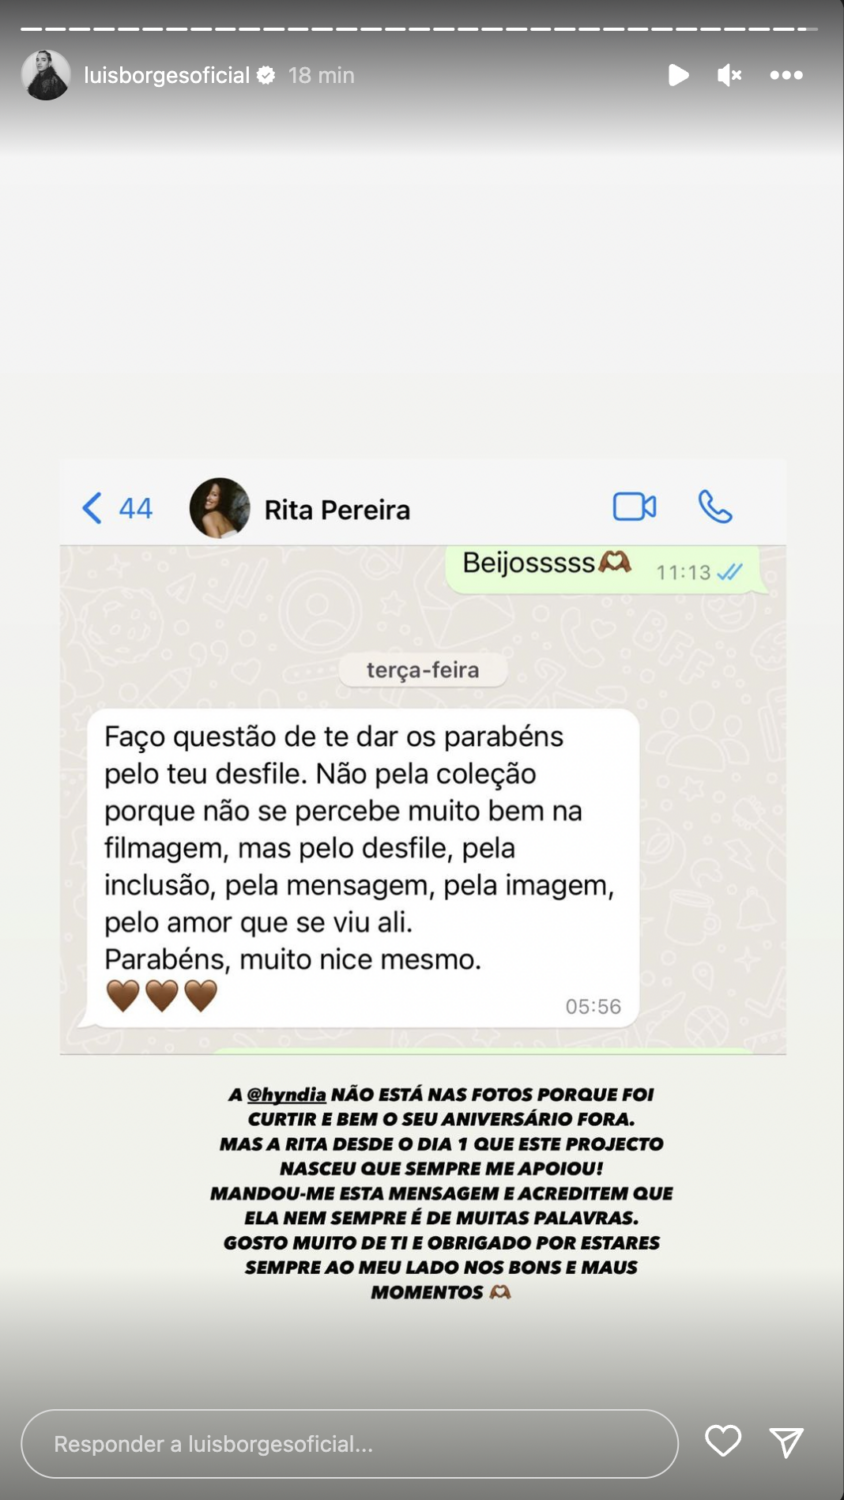 Luís Borges embevecido com mensagem (privada) de Rita Pereira: &#8220;Ela nem sempre é de muitas palavras&#8221;